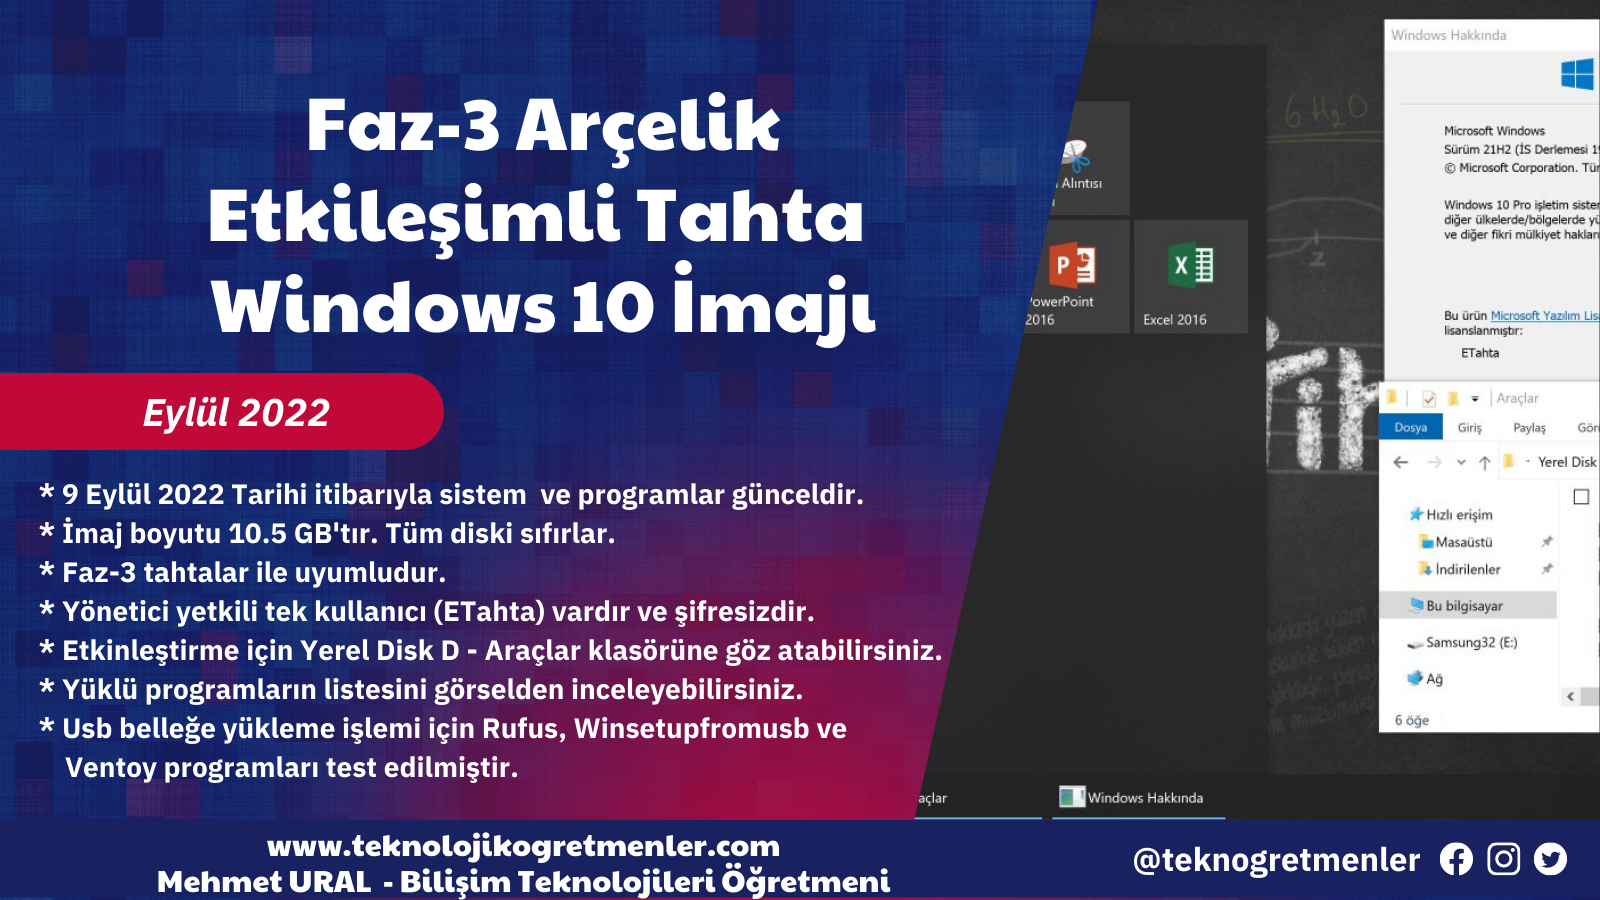 Faz-3 Arçelik Etkileşimli Tahta Windows 10 İmajı – Eylül 2022